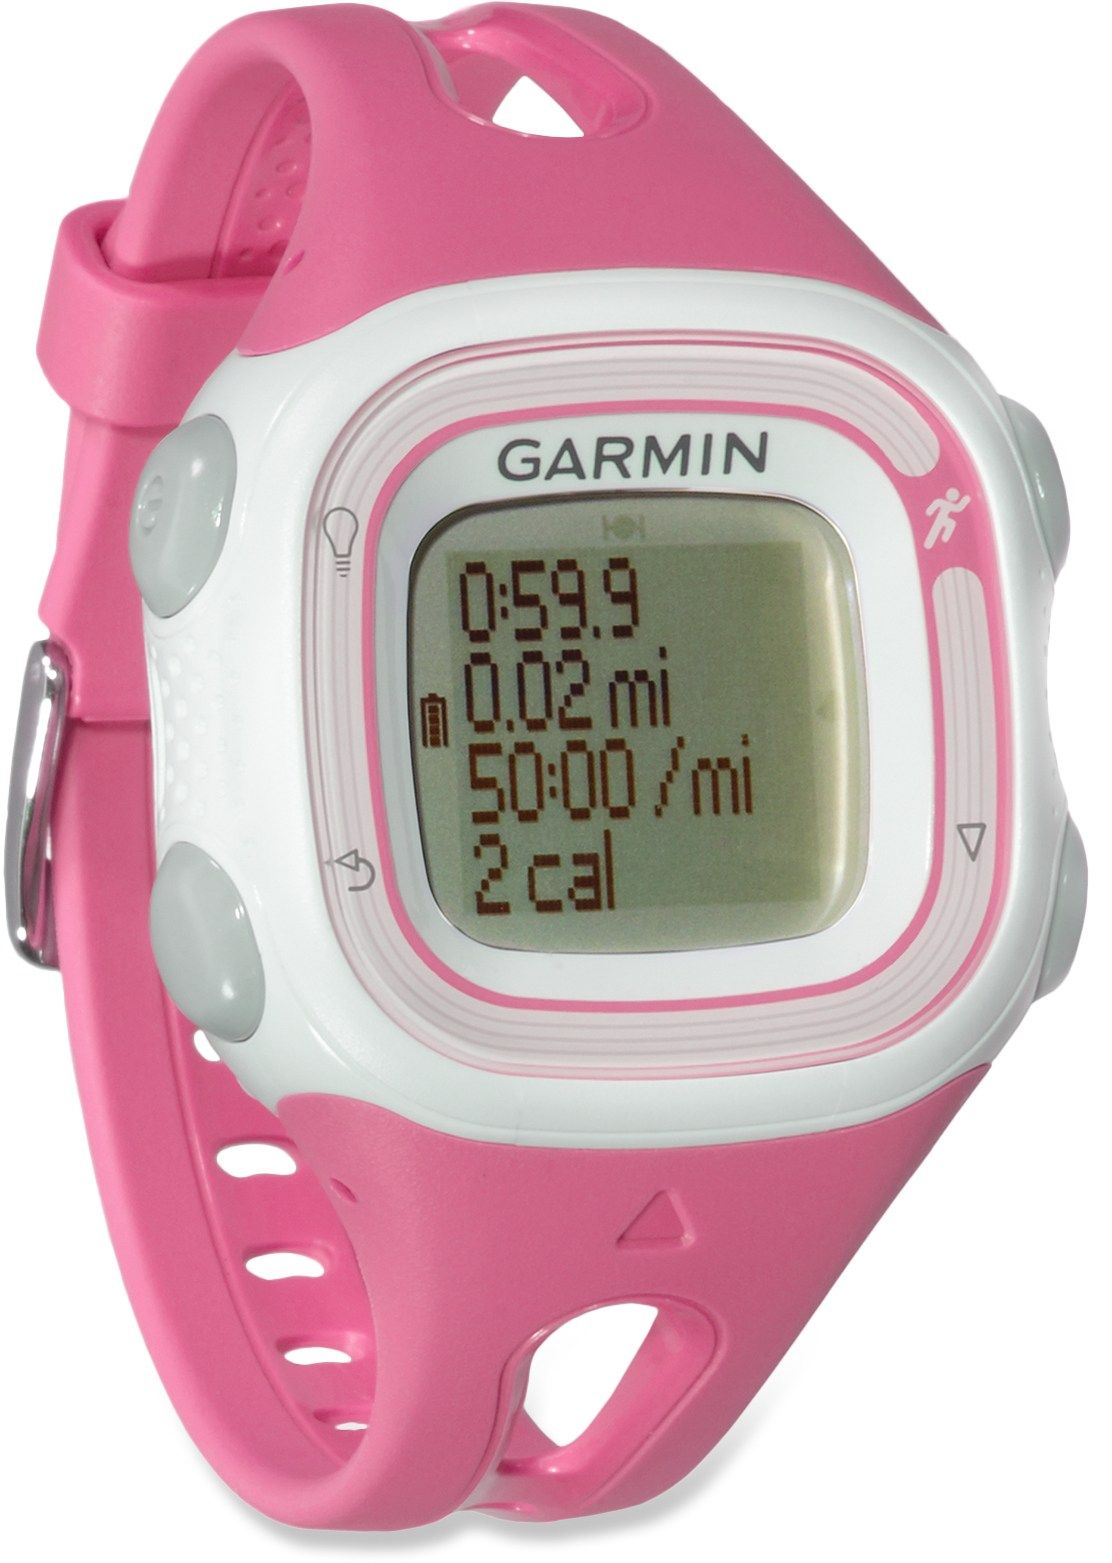 Garmin Forerunner 10 GPS Fitness Monitor